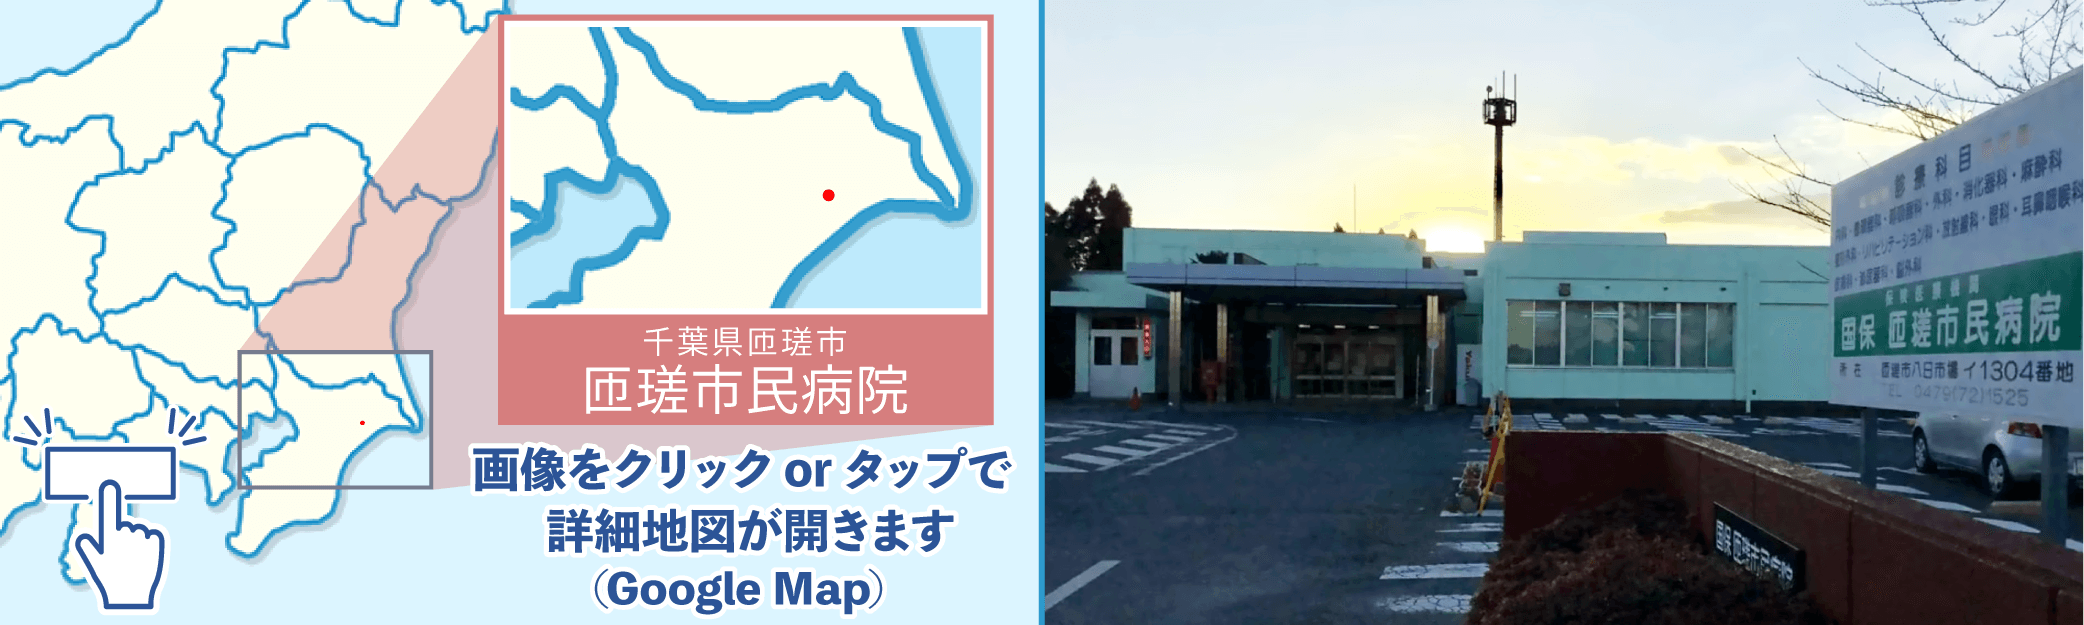 匝瑳市民病院地図・外観写真※クリックでGoogleMapが開きます